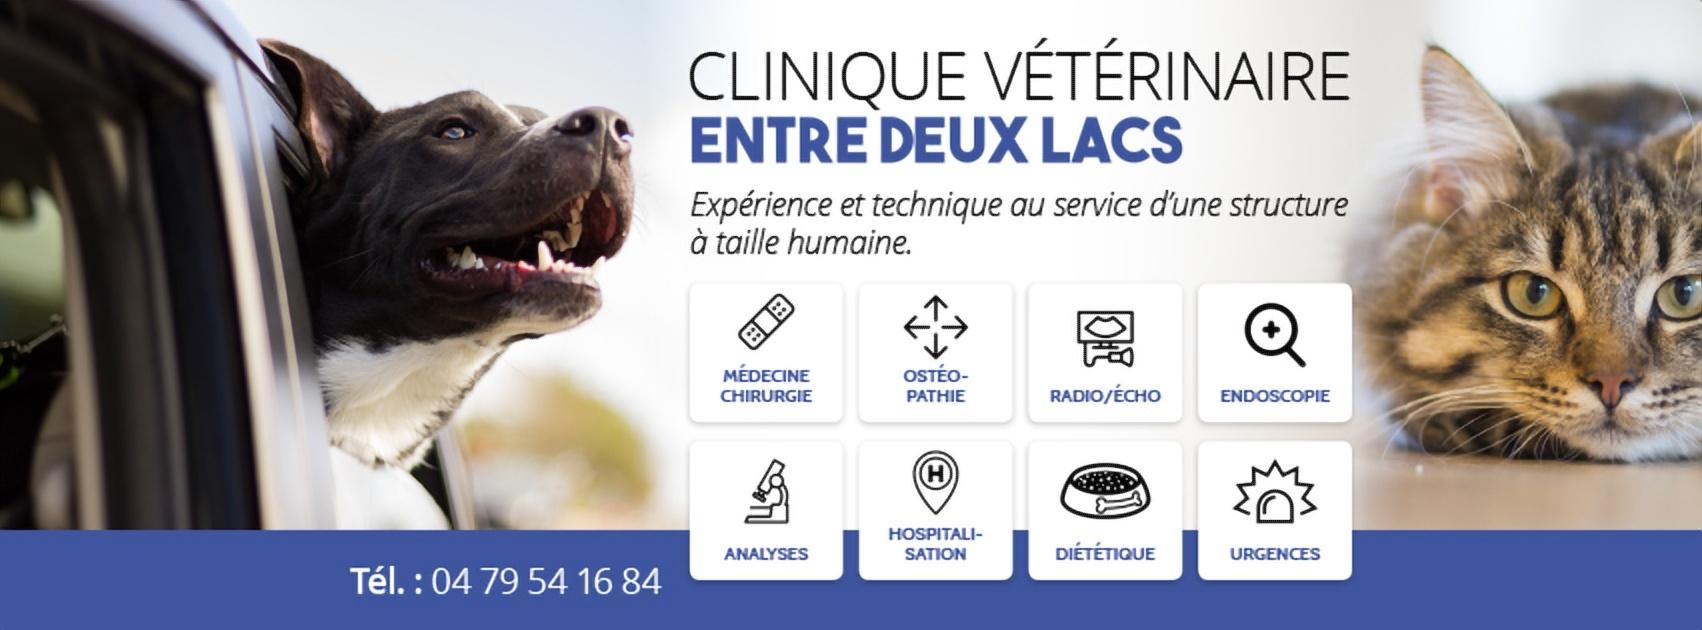 Clinique Vétérinaire Entre Deux Lacs Entrelacs